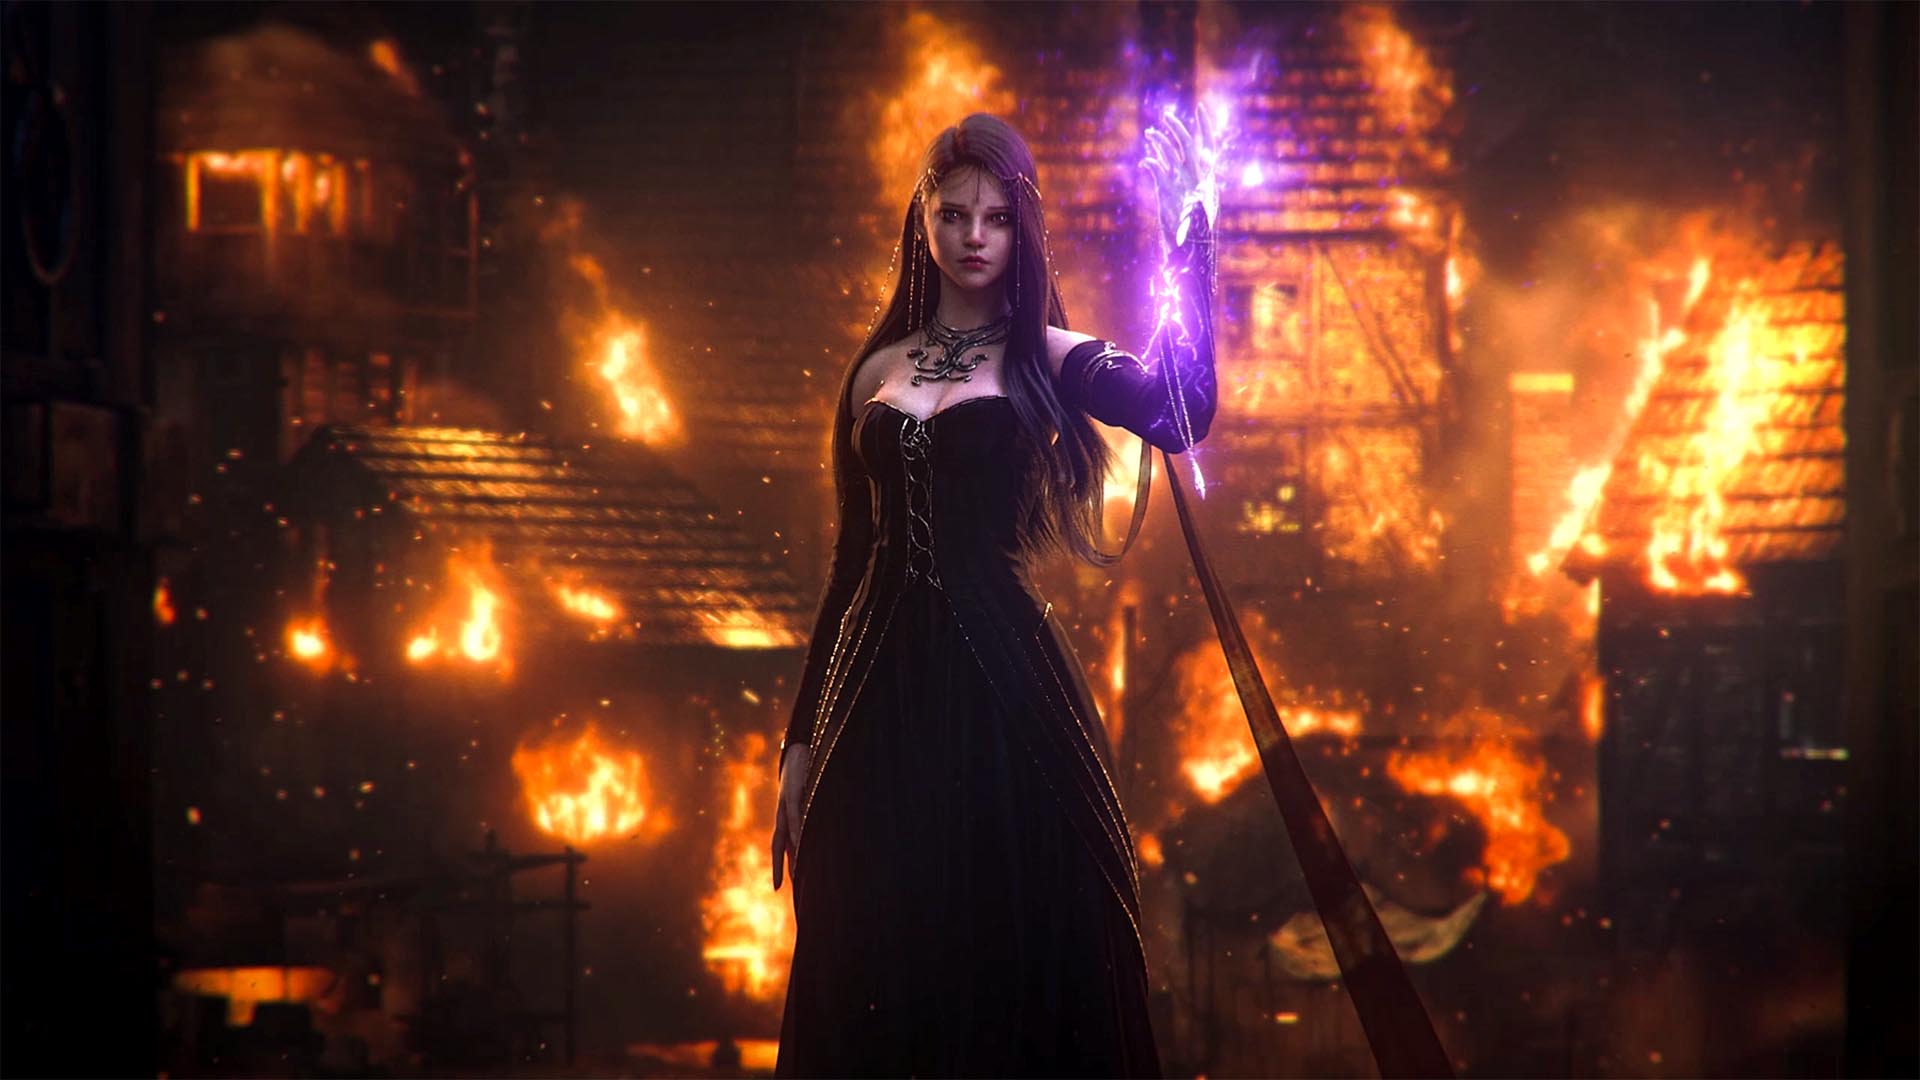 Calanthia, de pie, tiene un vestido negro, una larga melena del mismo color y una luz violeta emana de su mano. A su espalda se ve una ciudad en llamas.